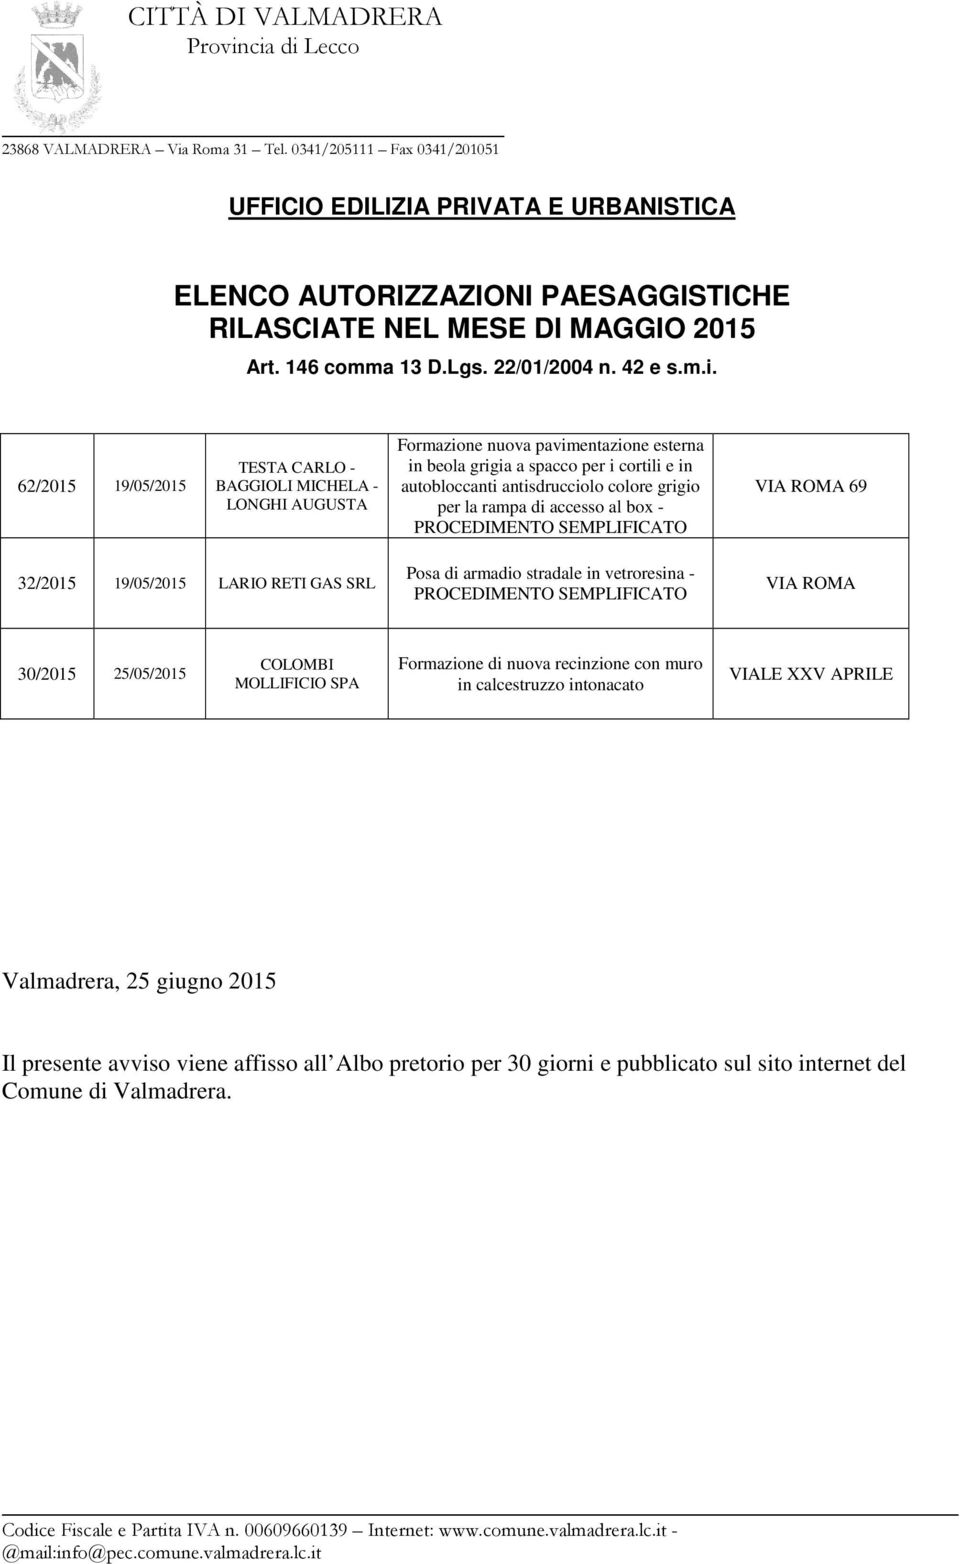 accesso al box - VIA ROMA 69 32/2015 19/05/2015 LARIO RETI GAS SRL Posa di armadio stradale in vetroresina - VIA ROMA 30/2015